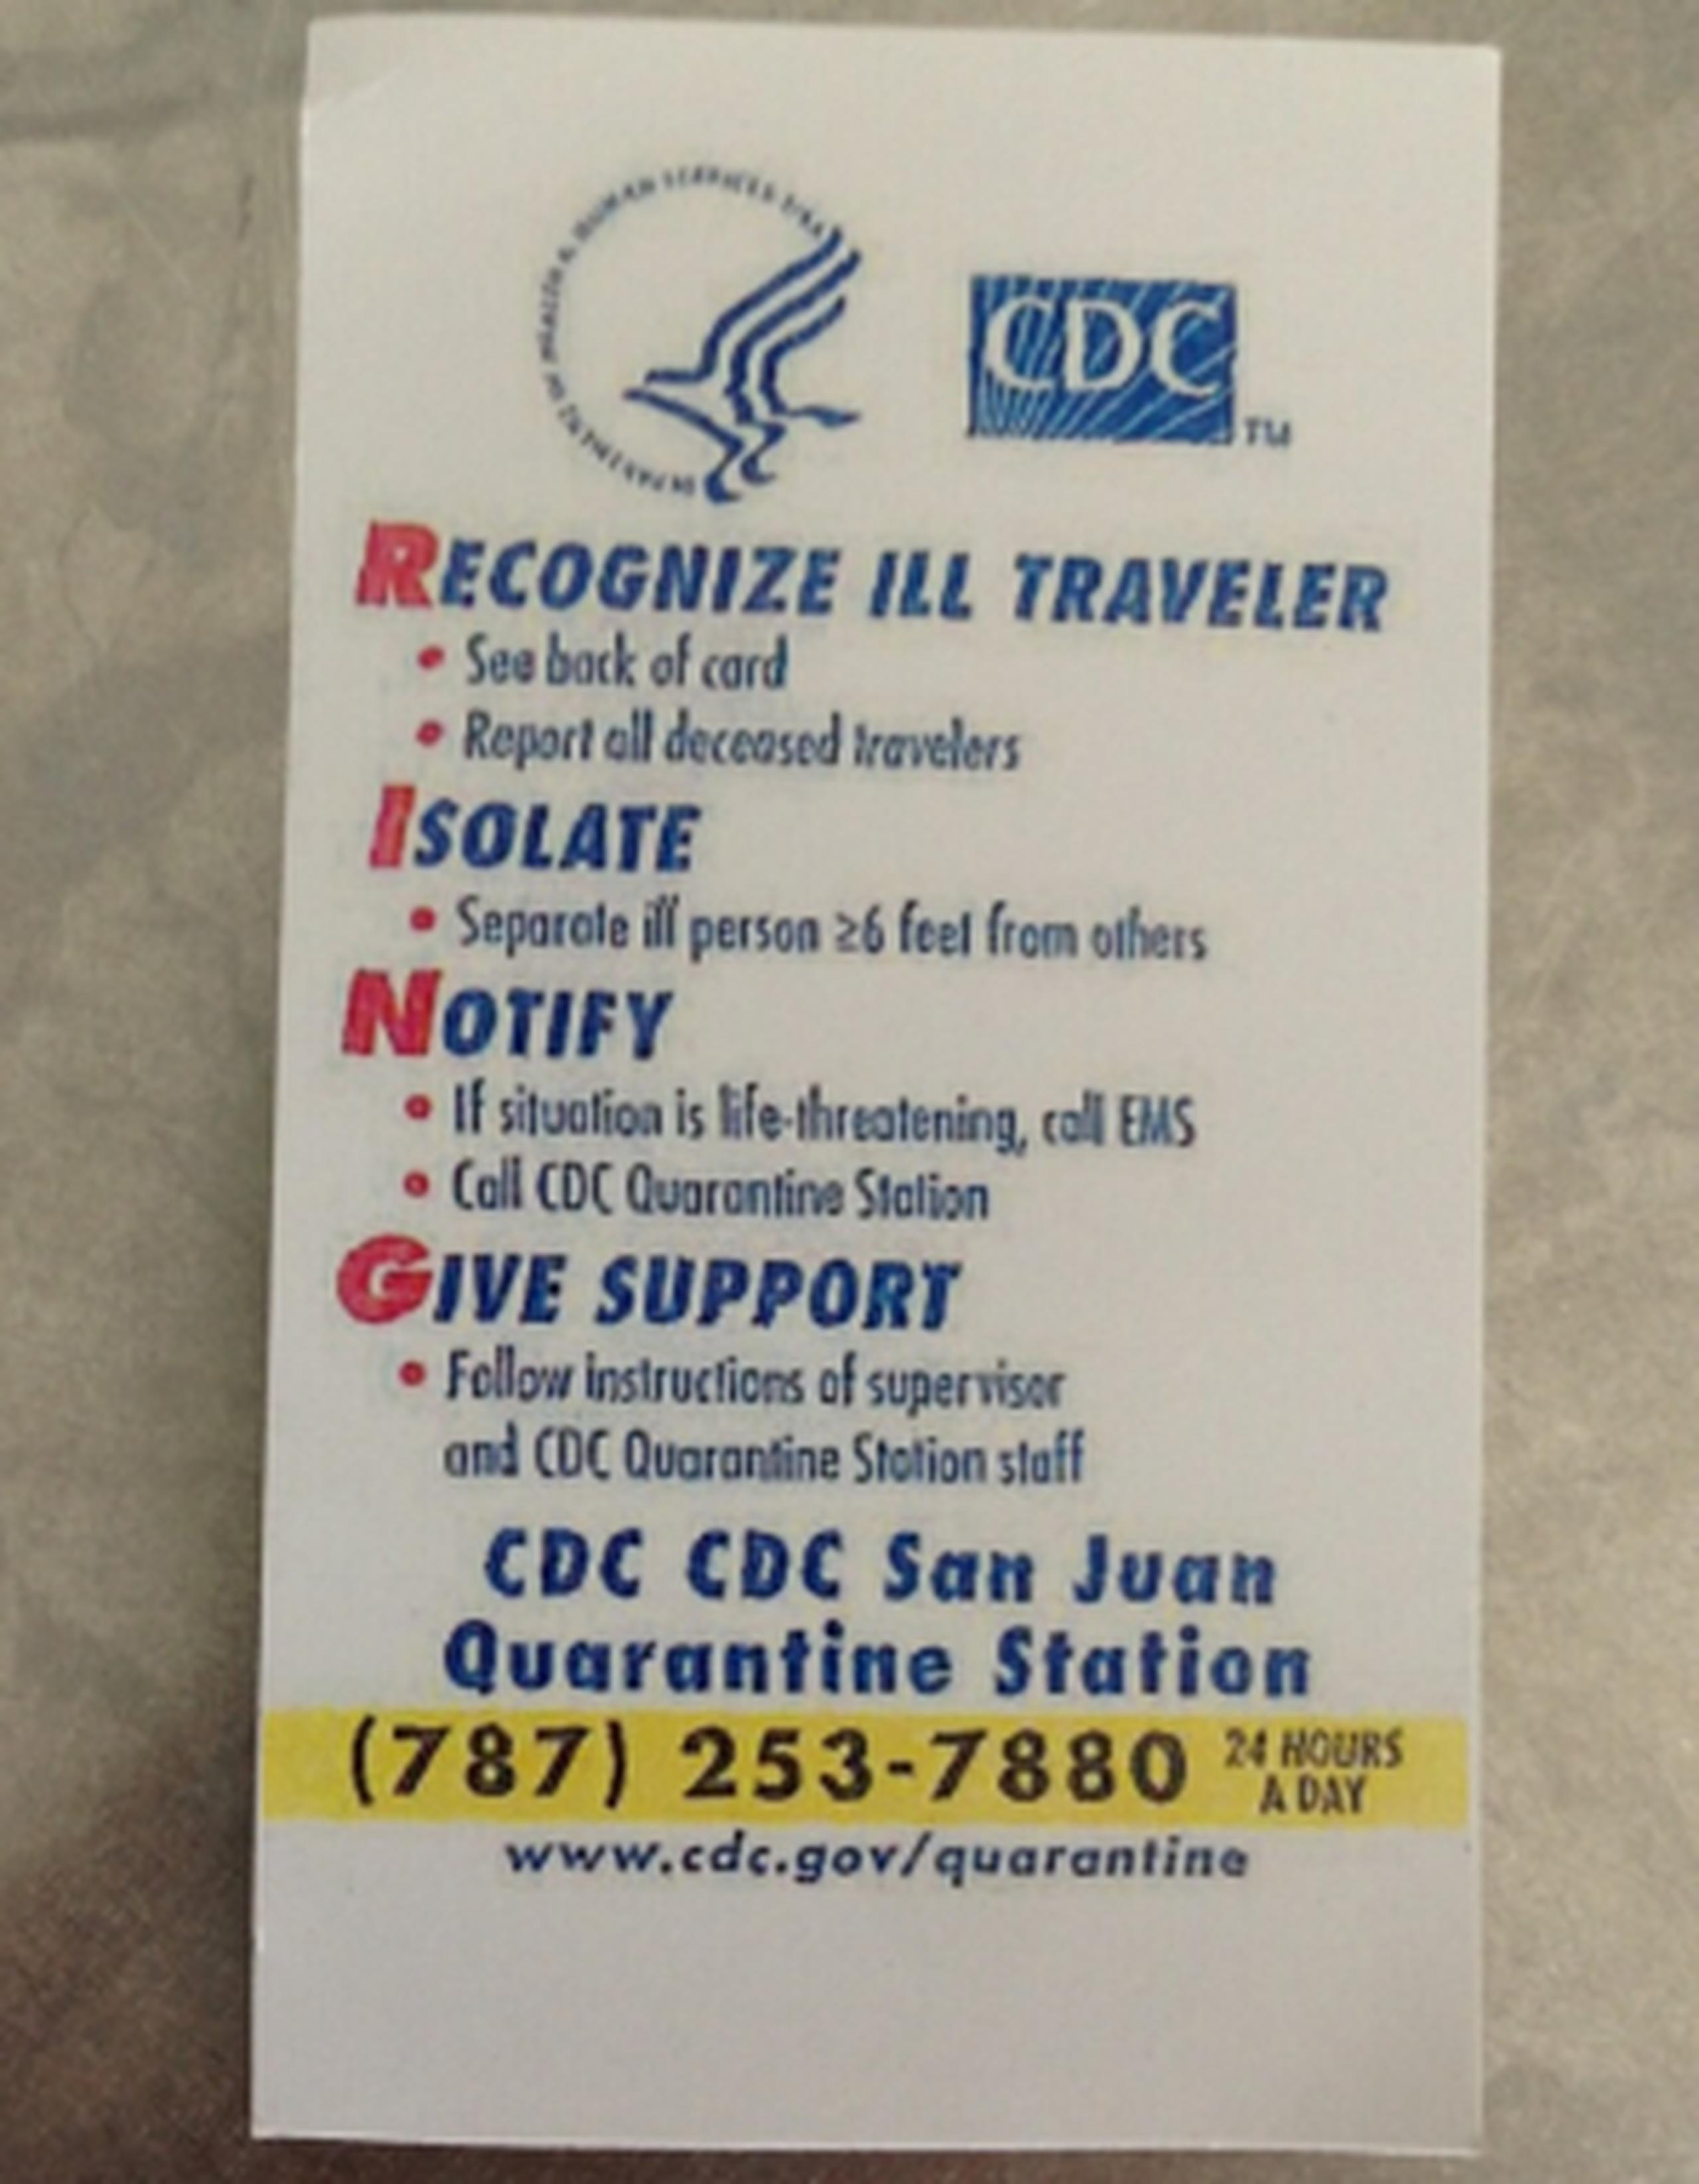 Esta es la tarjeta que tiene que llevar consigo todo empleado del aeropuerto donde se resumen los pasos a seguir en caso de ver a una persona con síntomas sospechosos de ébola y el número de teléfono al que tienen que alertar. (Suministrada)